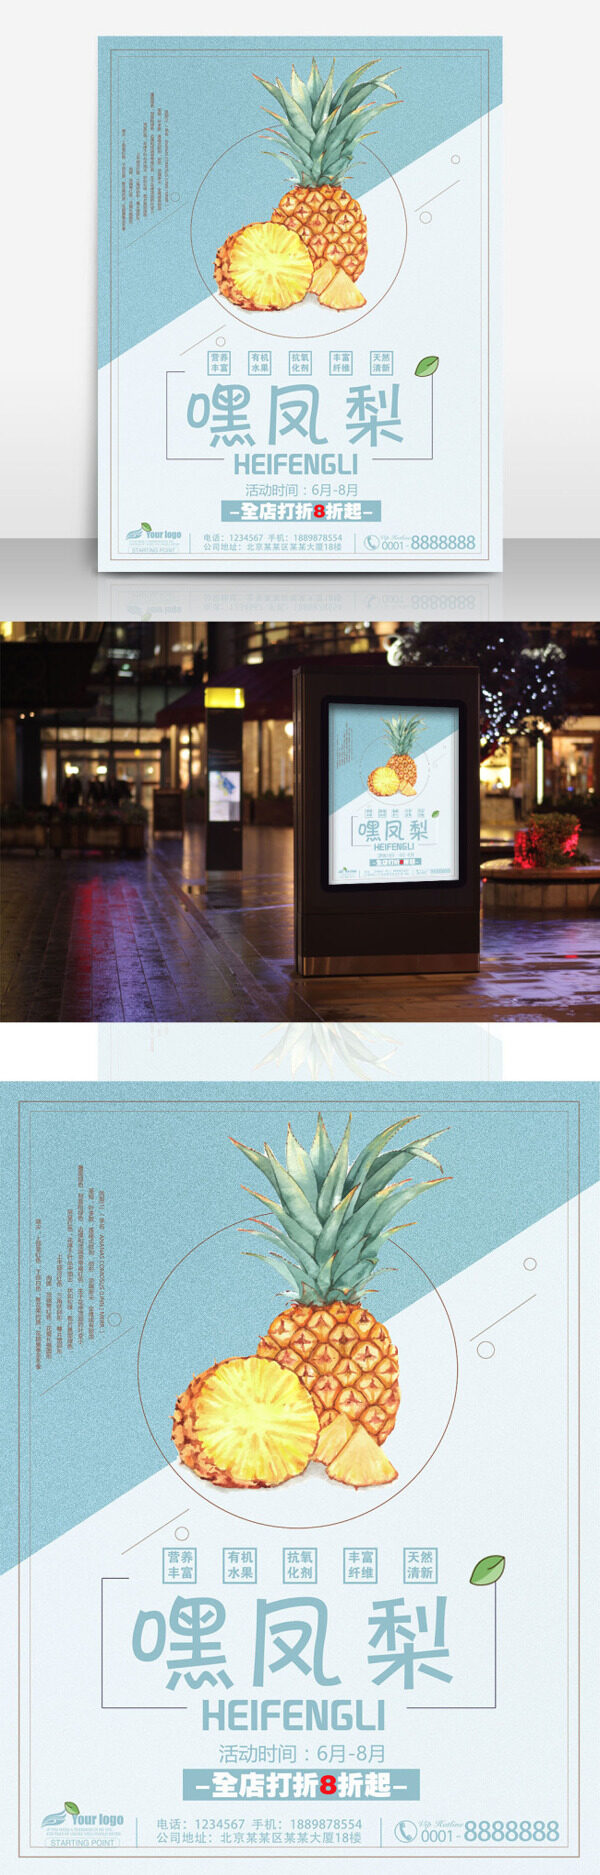 嘿凤梨喜欢你凤梨菠萝水果促销清新海报设计